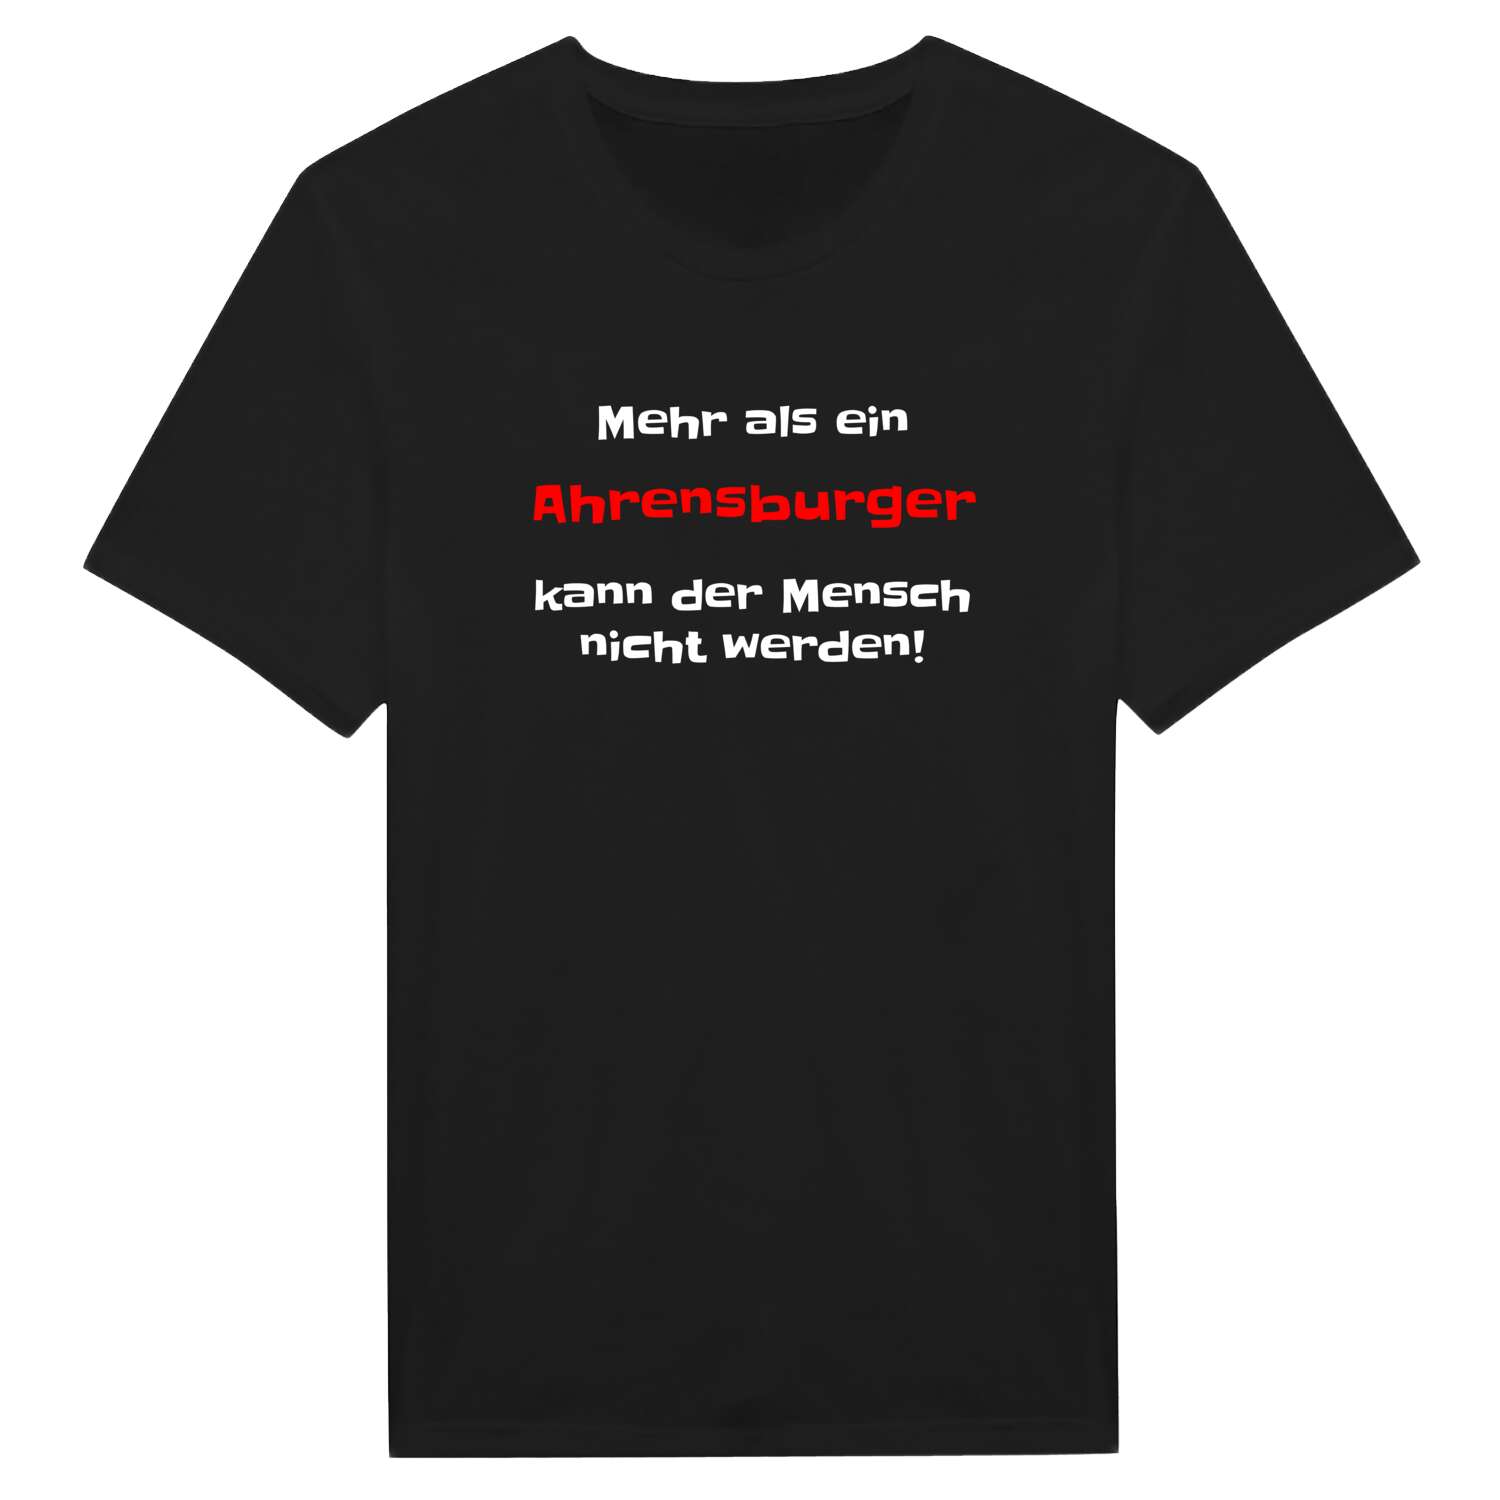 Ahrensburg T-Shirt »Mehr als ein«